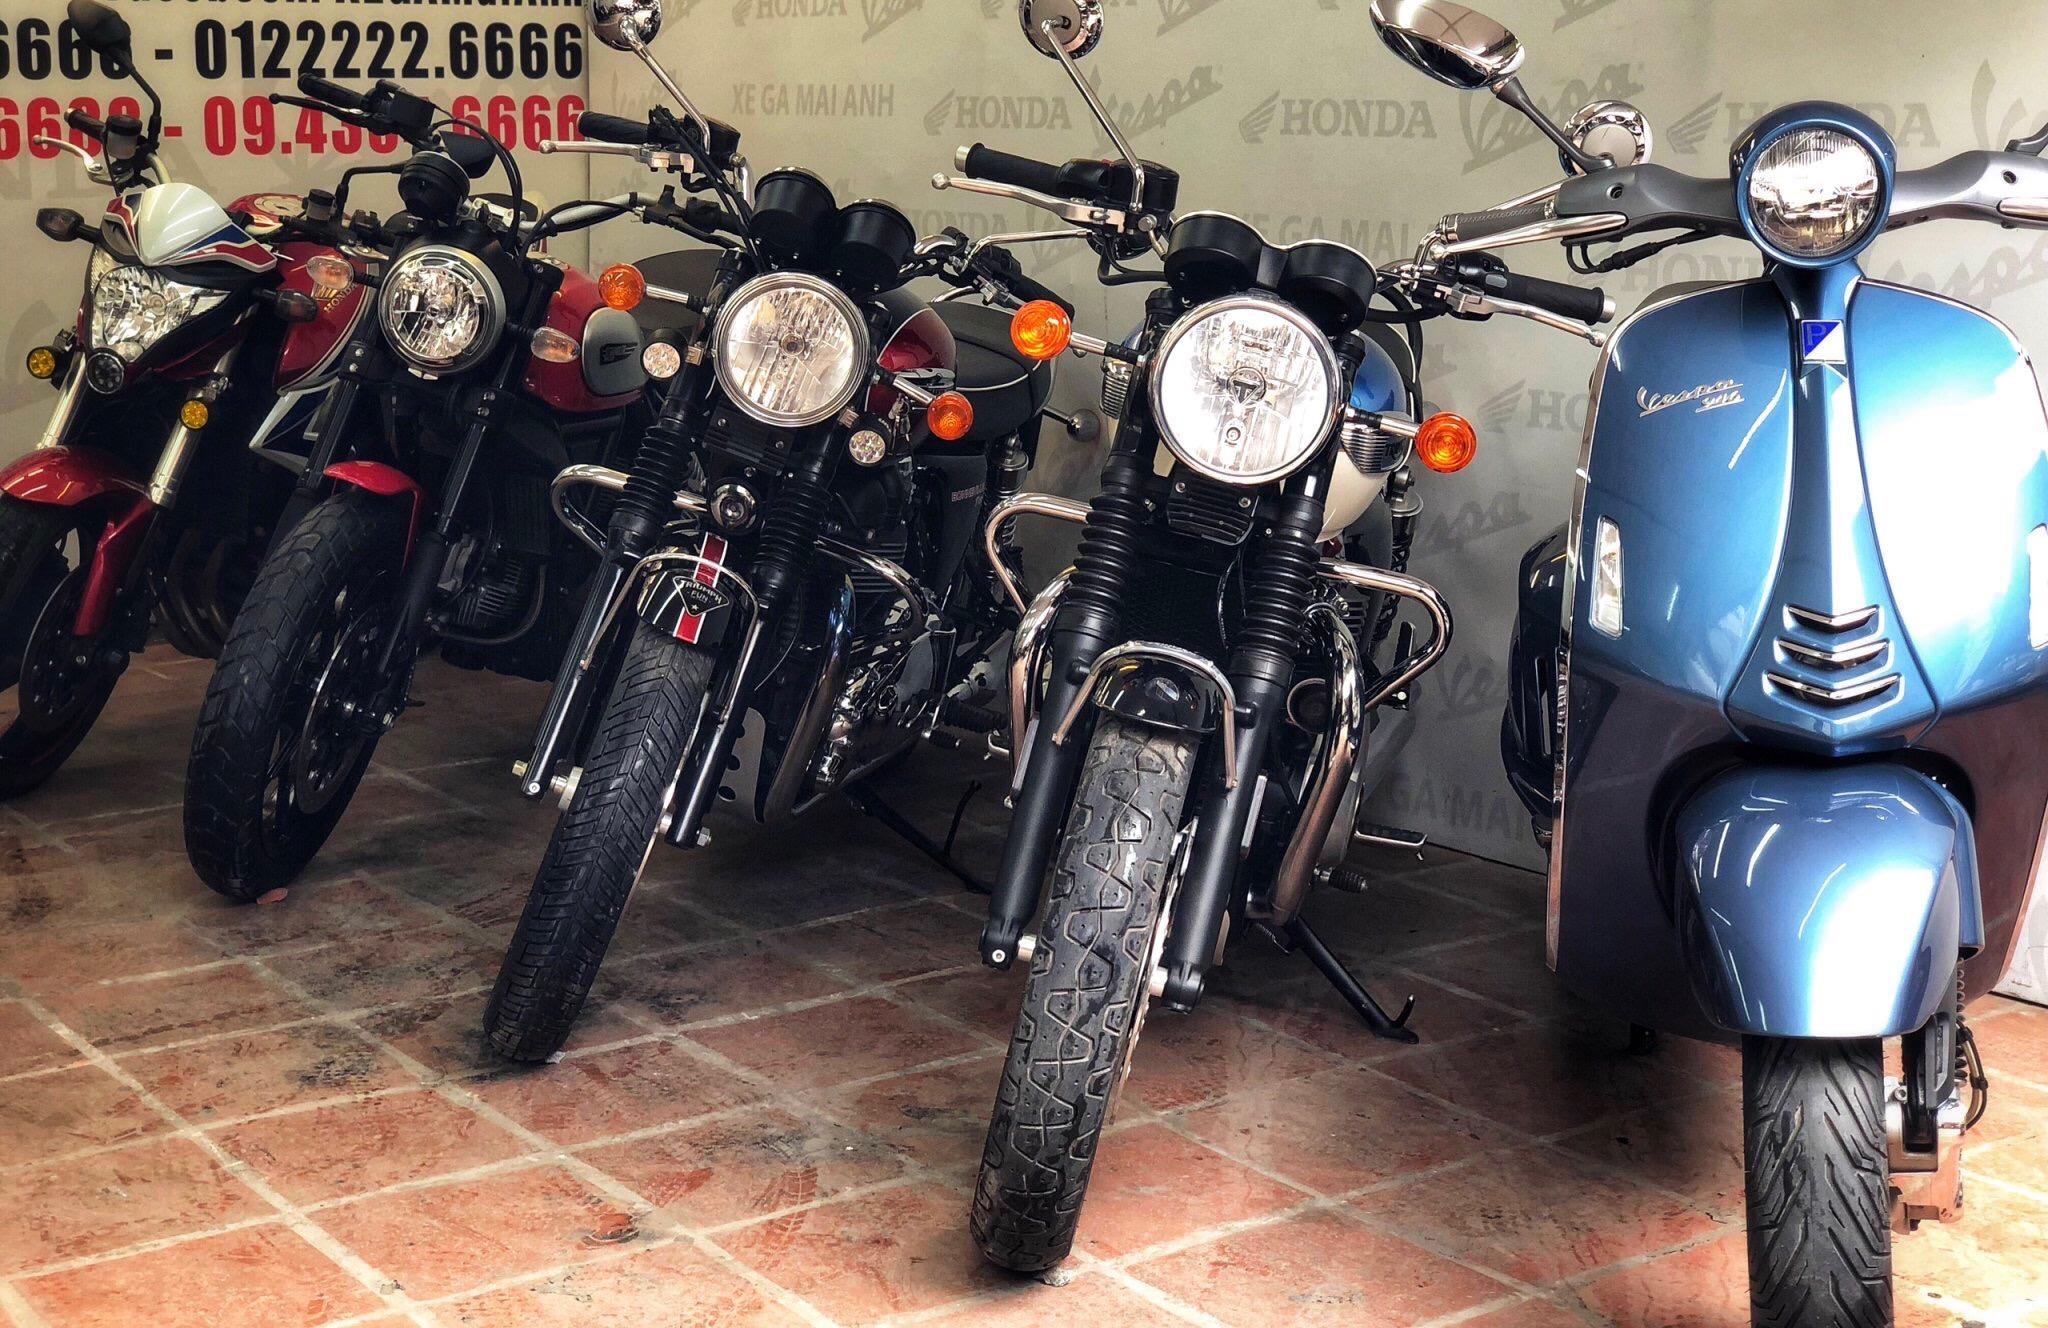 MotorMaiAnh bán Harley Davidson Forty Eight 1200cc    Giá 359 triệu   0911771996  Xe Hơi Việt  Chợ Mua Bán Xe Ô Tô Xe Máy Xe Tải Xe Khách  Online